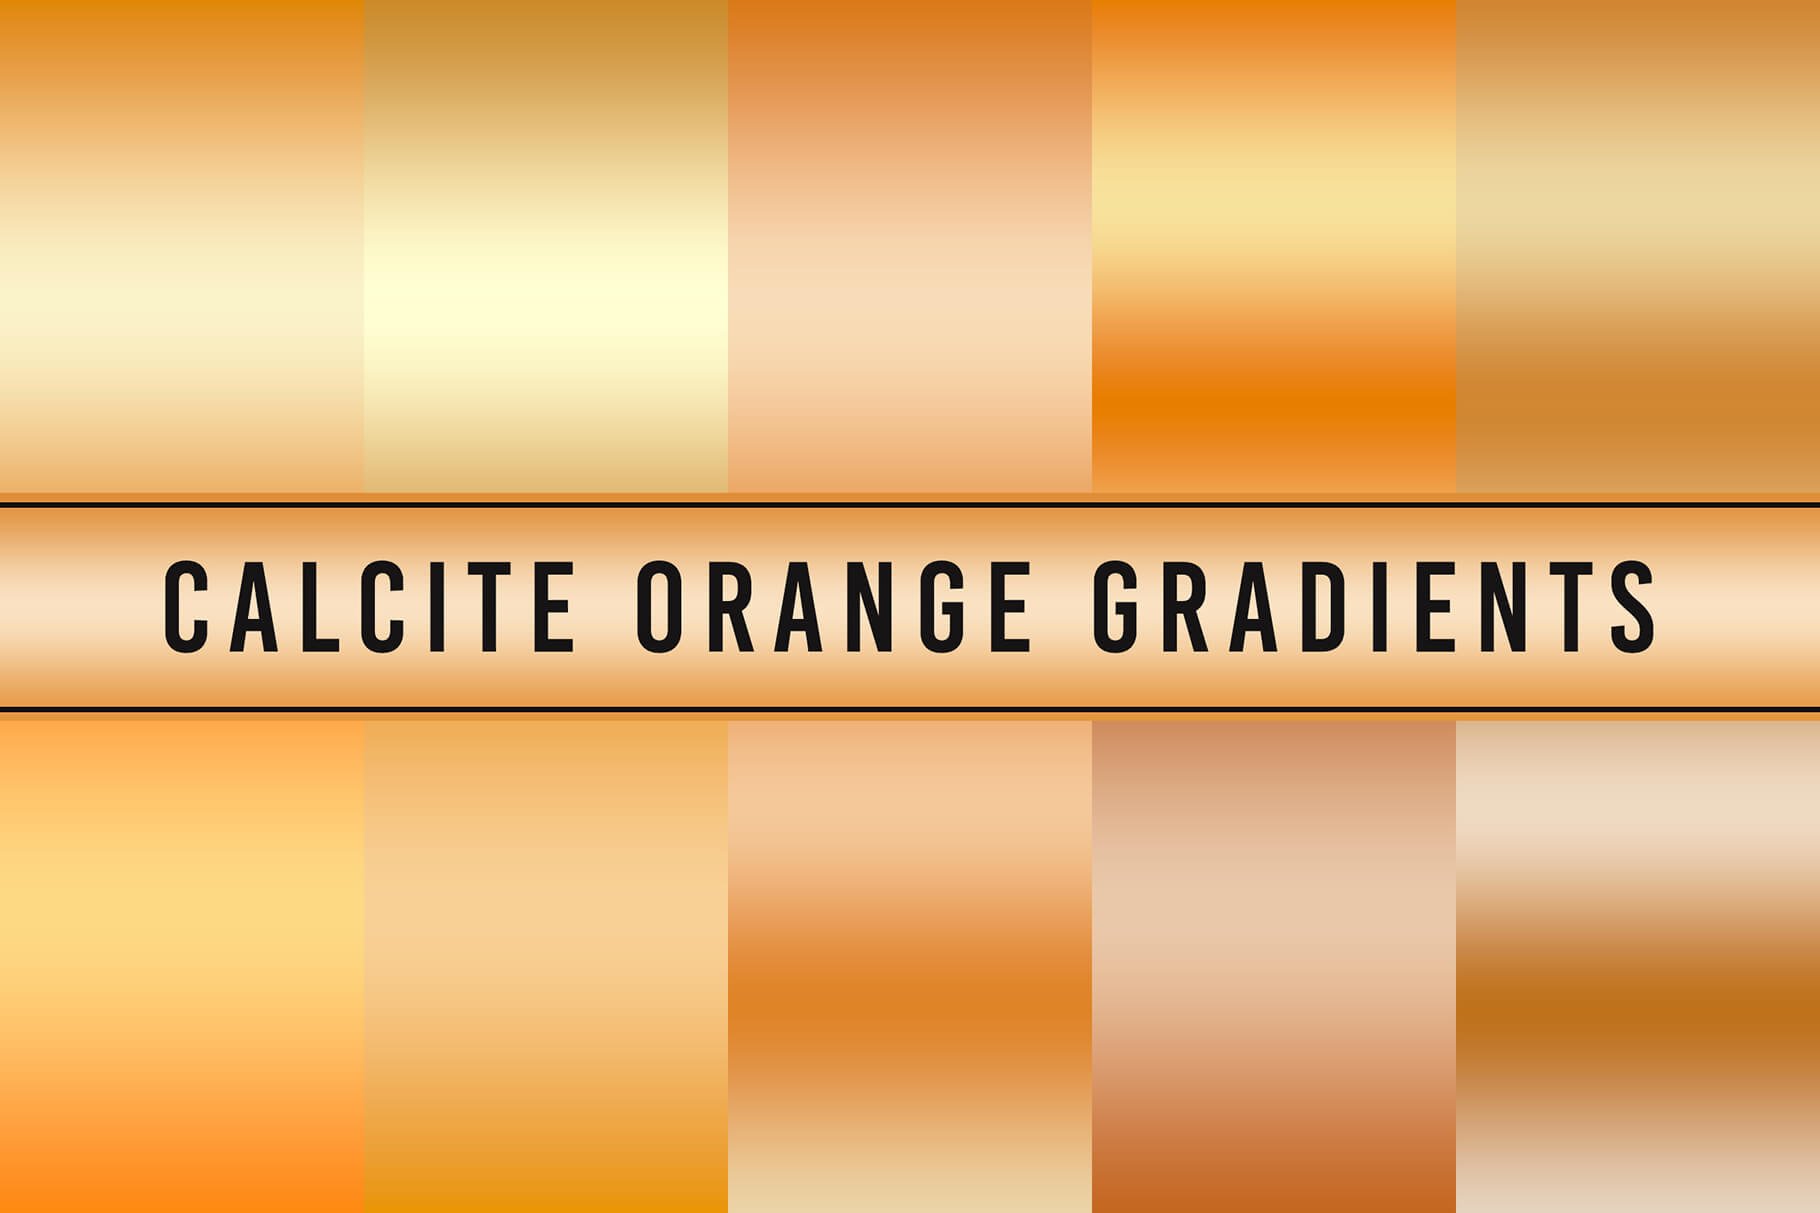 Calcite Orange Gradients cover image.